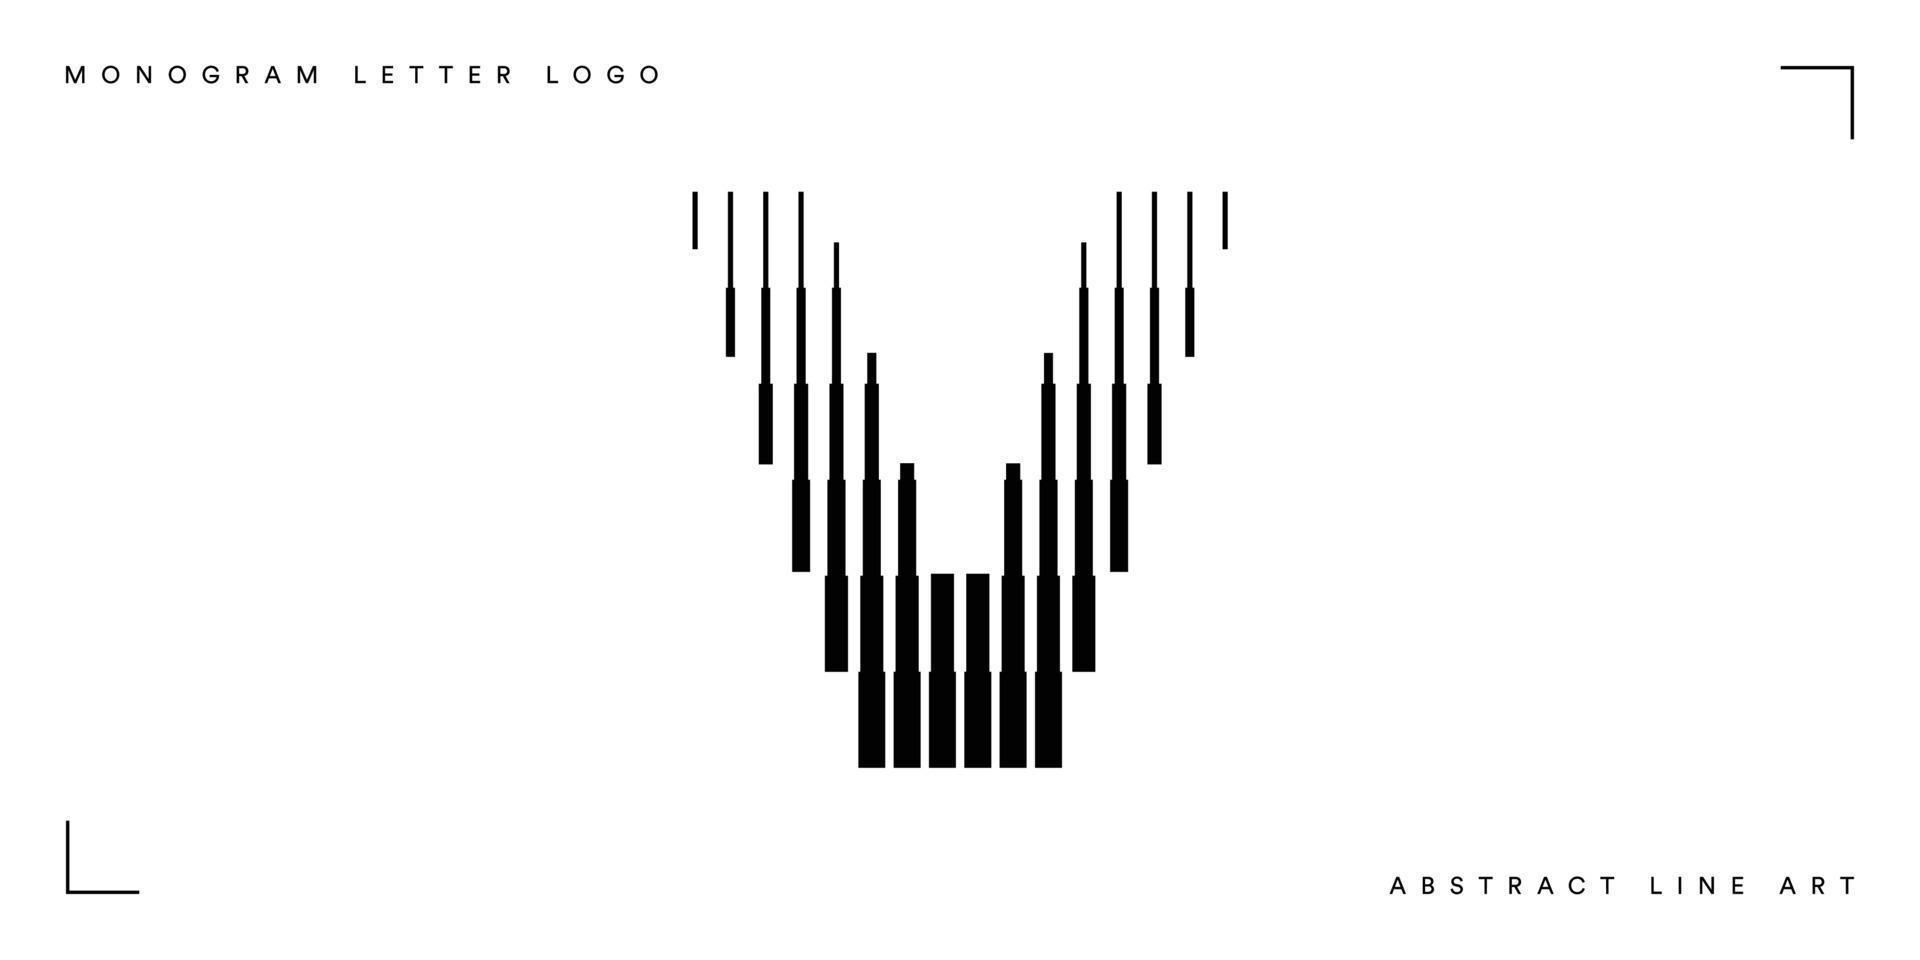 Abstract line art letter v monogram logo vector